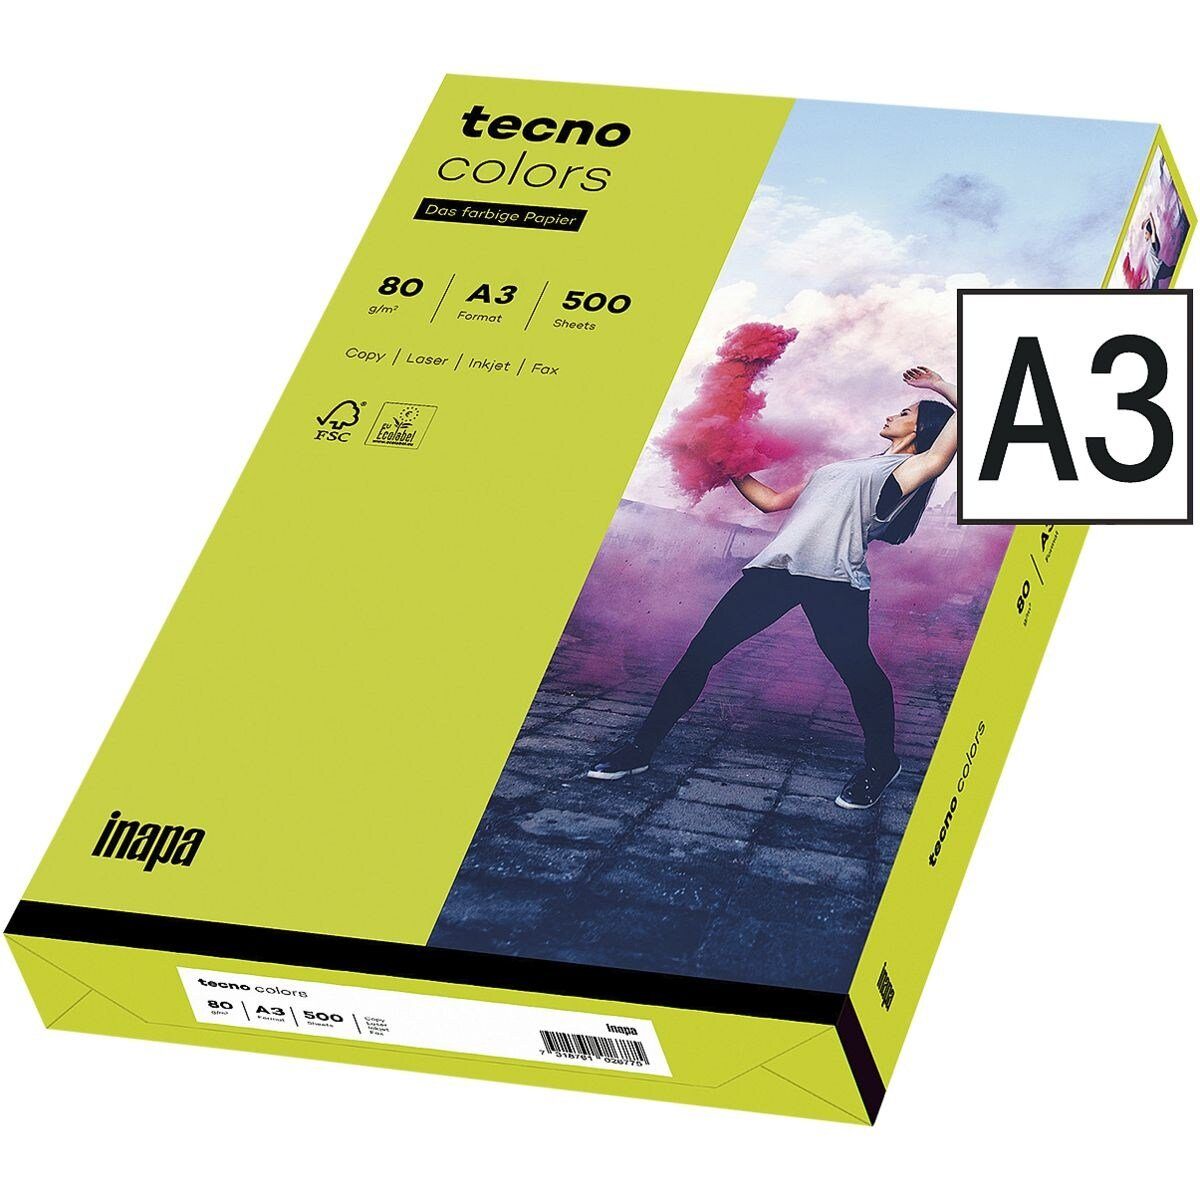 Kopierpapier Intensivfarben, und 80 Blatt Rainbow Drucker- leuchtendgrün Colors, A3, tecno Inapa tecno g/m², / Format DIN 500